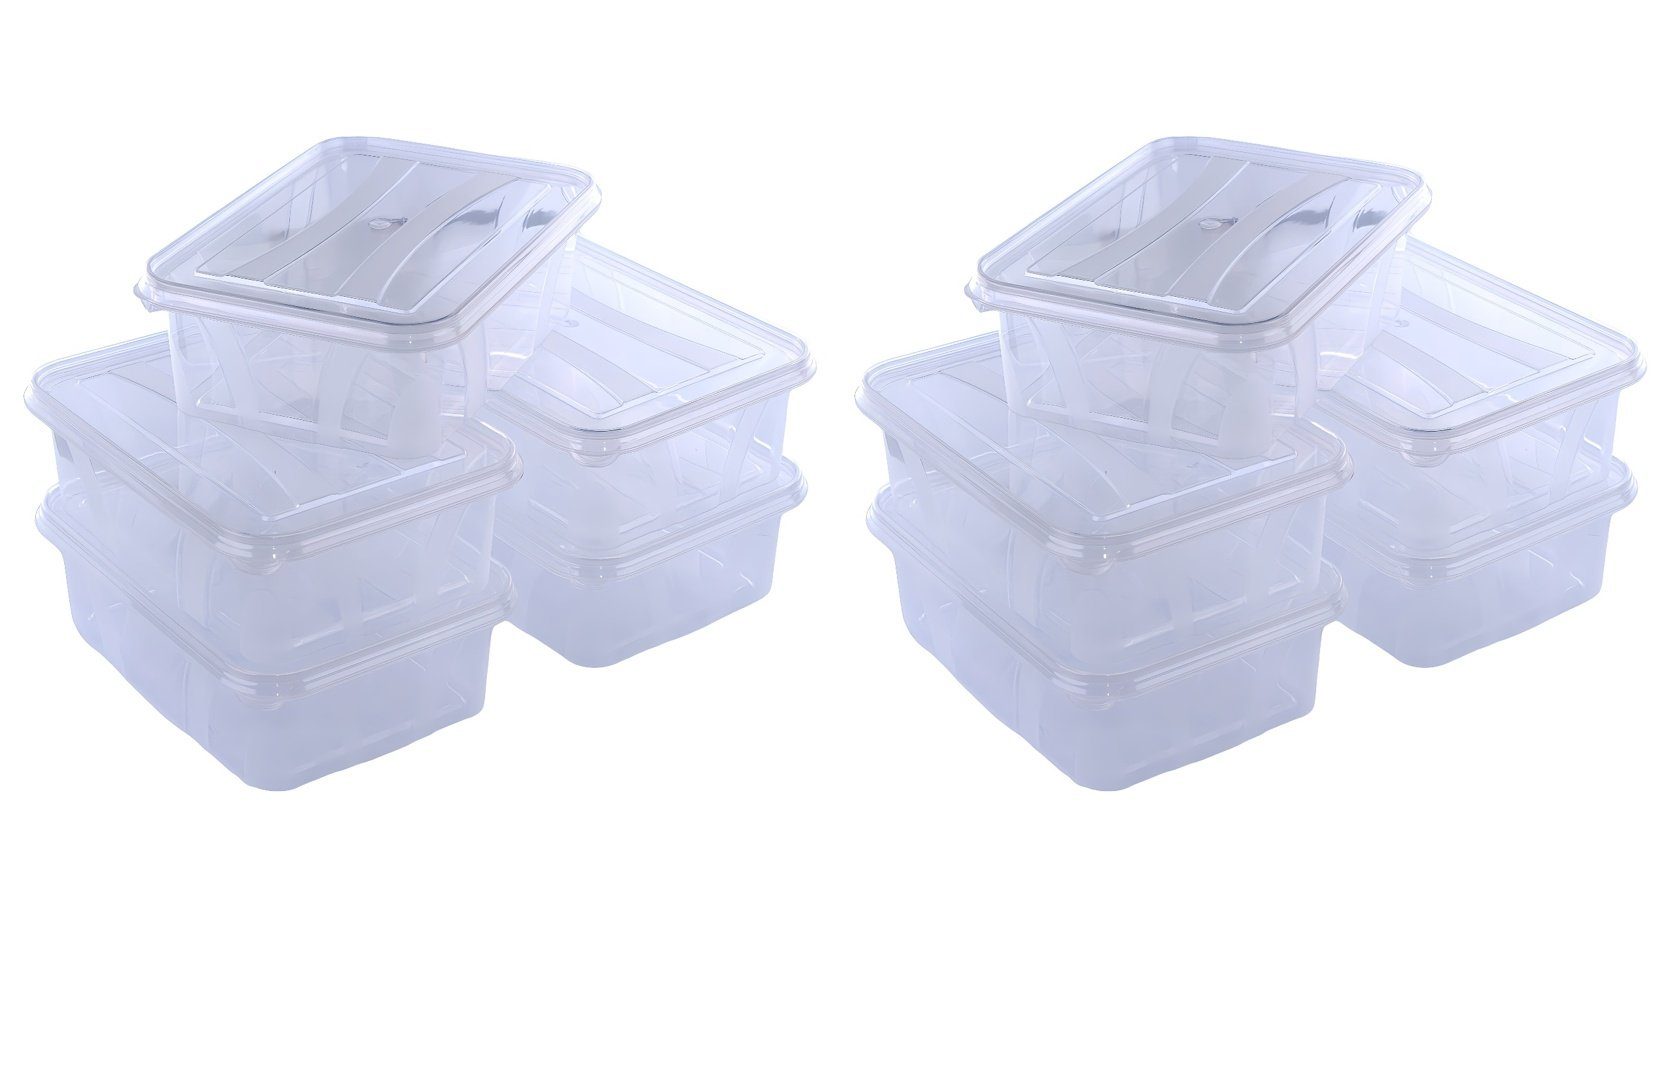 Logiplast Aufbewahrungsbox 10 Stück 194 x 140 x 64 mm 1,2L Volumen (Spar-Set, 10 Stück), spülmaschinenfest, lebensmittelecht, als Gefrierdose geeignet